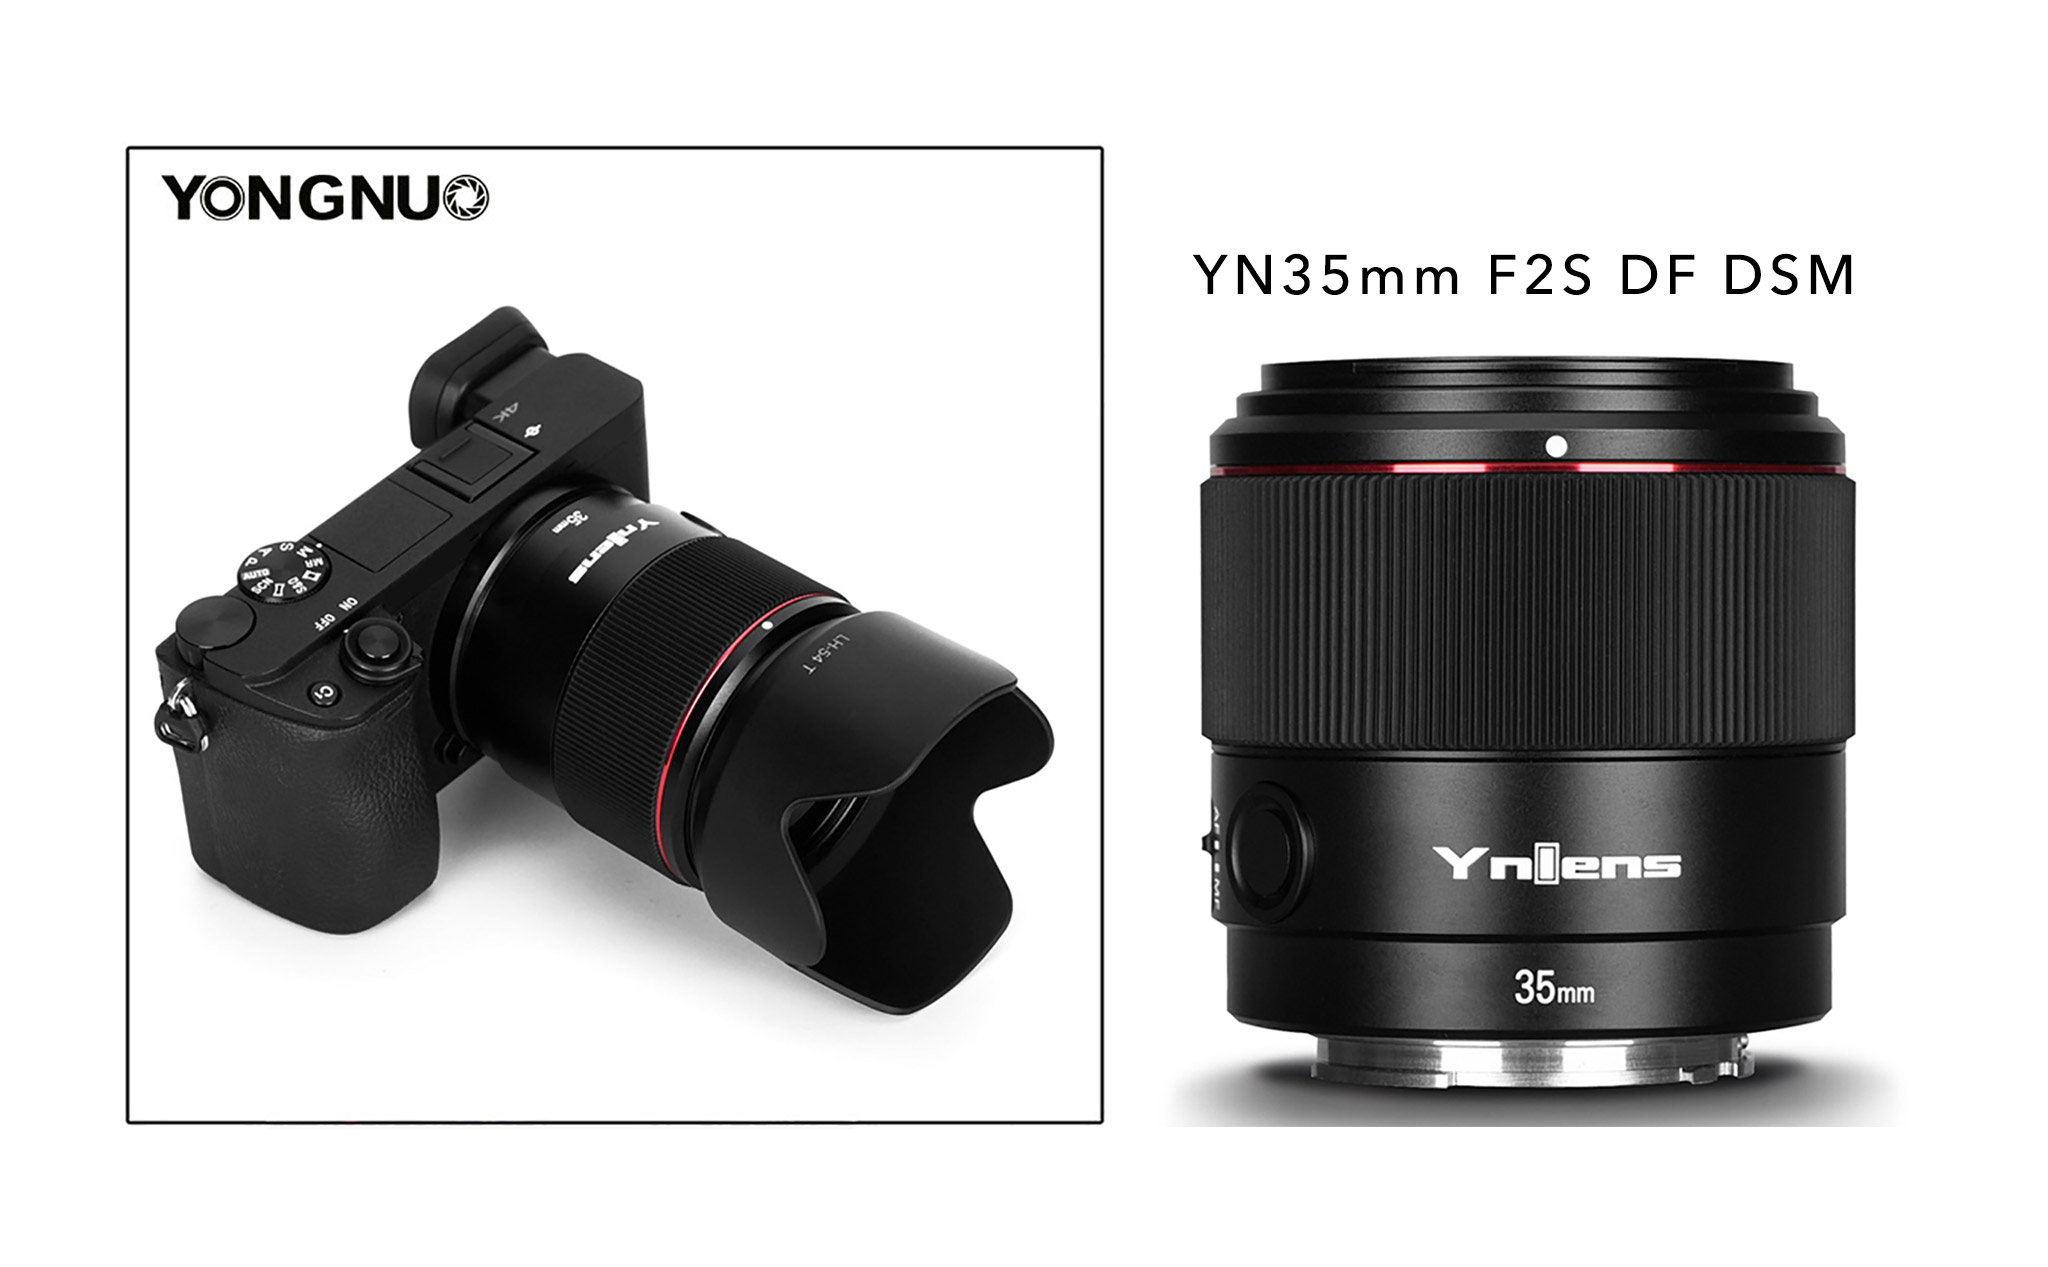 Yongnuo ra mắt ống kính 35mm F2S DF DSM lấy nét tự động cho máy ảnh fullframe Sony